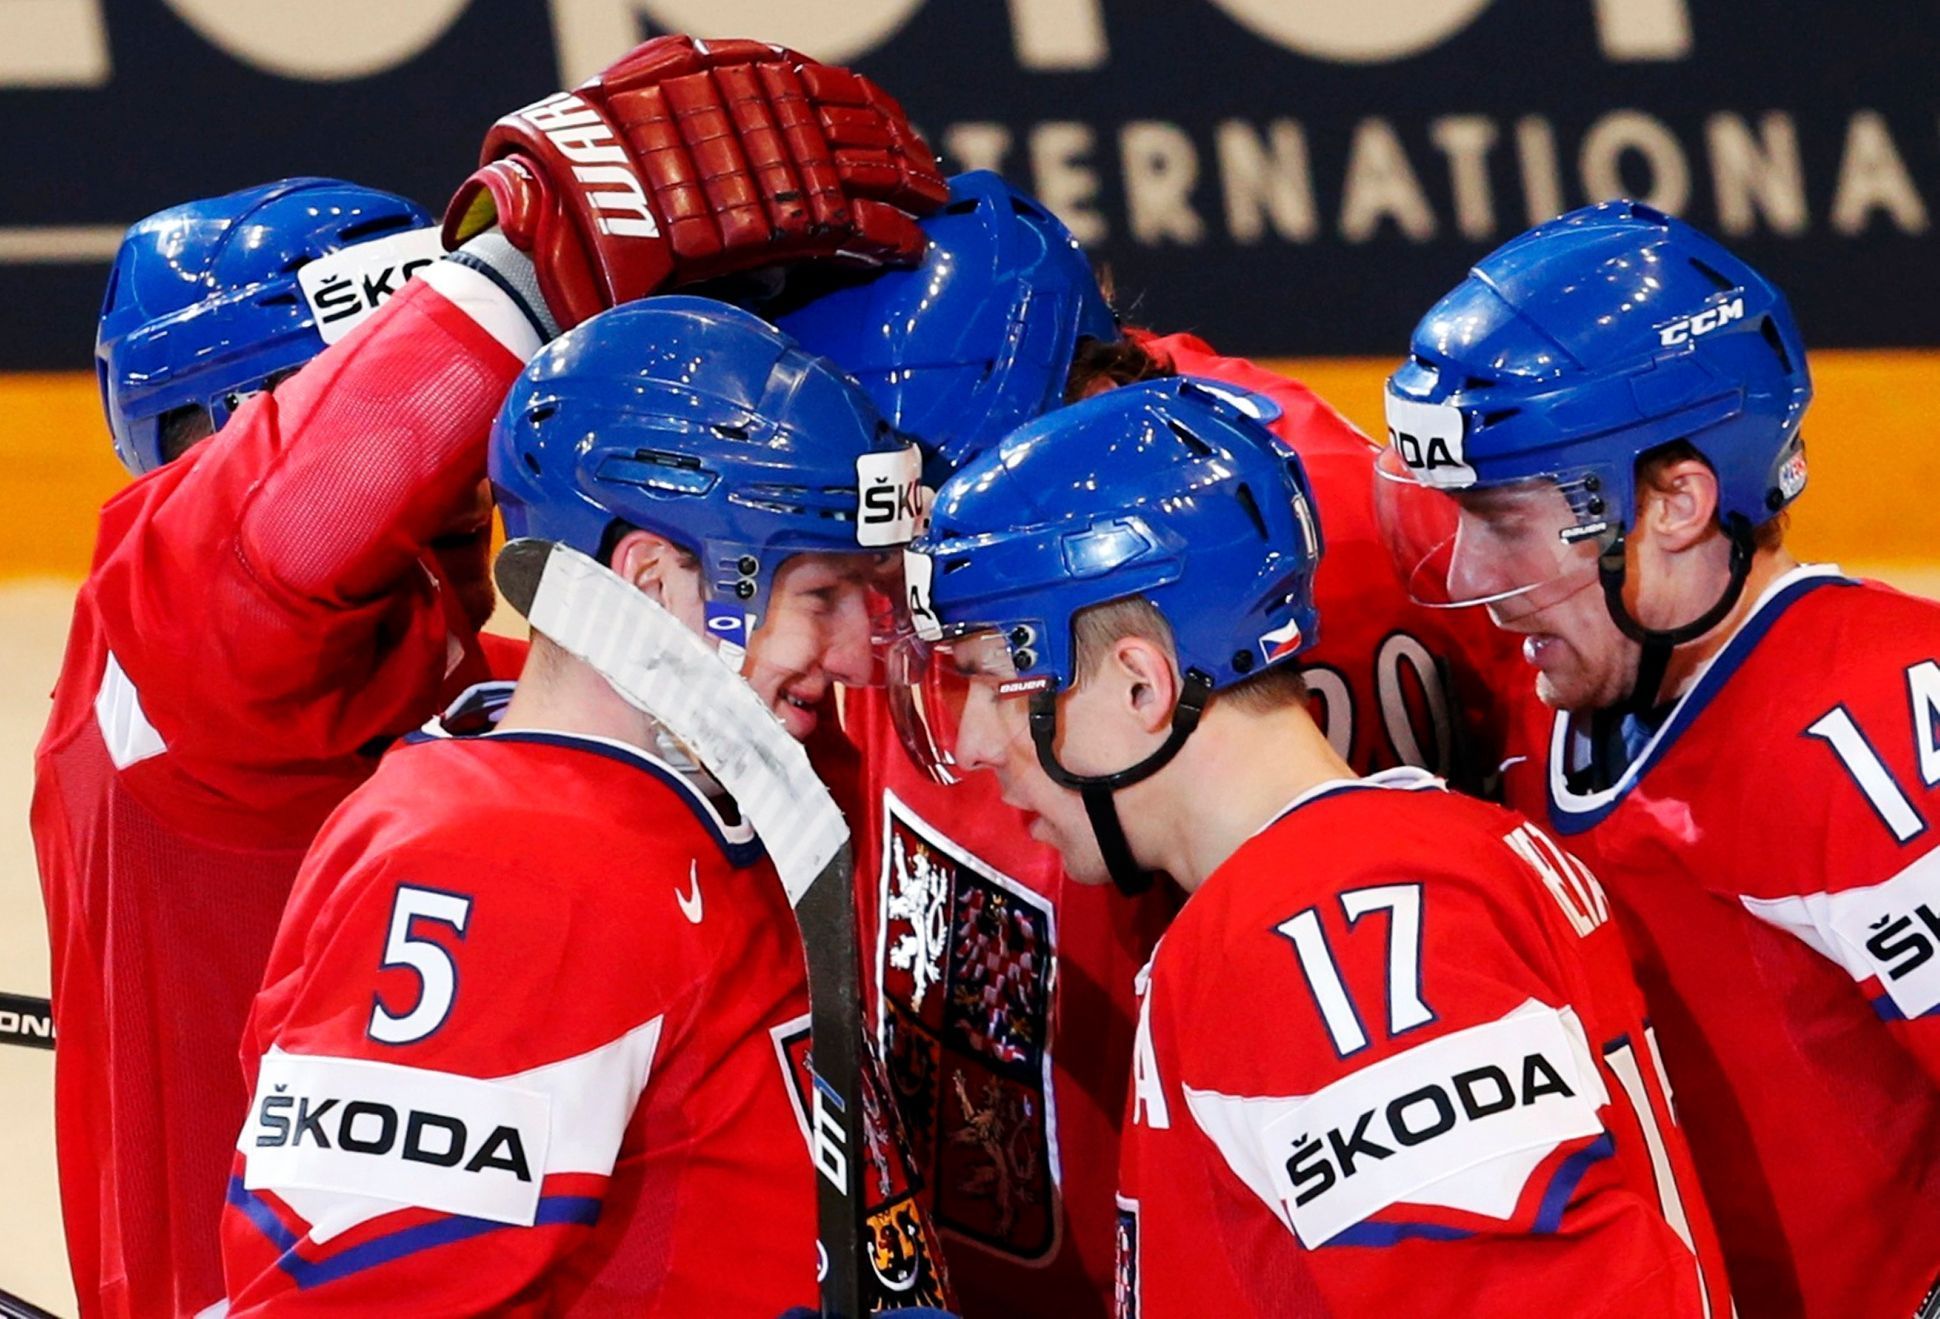 MS v hokeji 2013, Česko - Bělorusko: Radim Vrbata (17), Ladislav Šmíd (5) a Tomáš Fleischmann slaví gól na 2:0